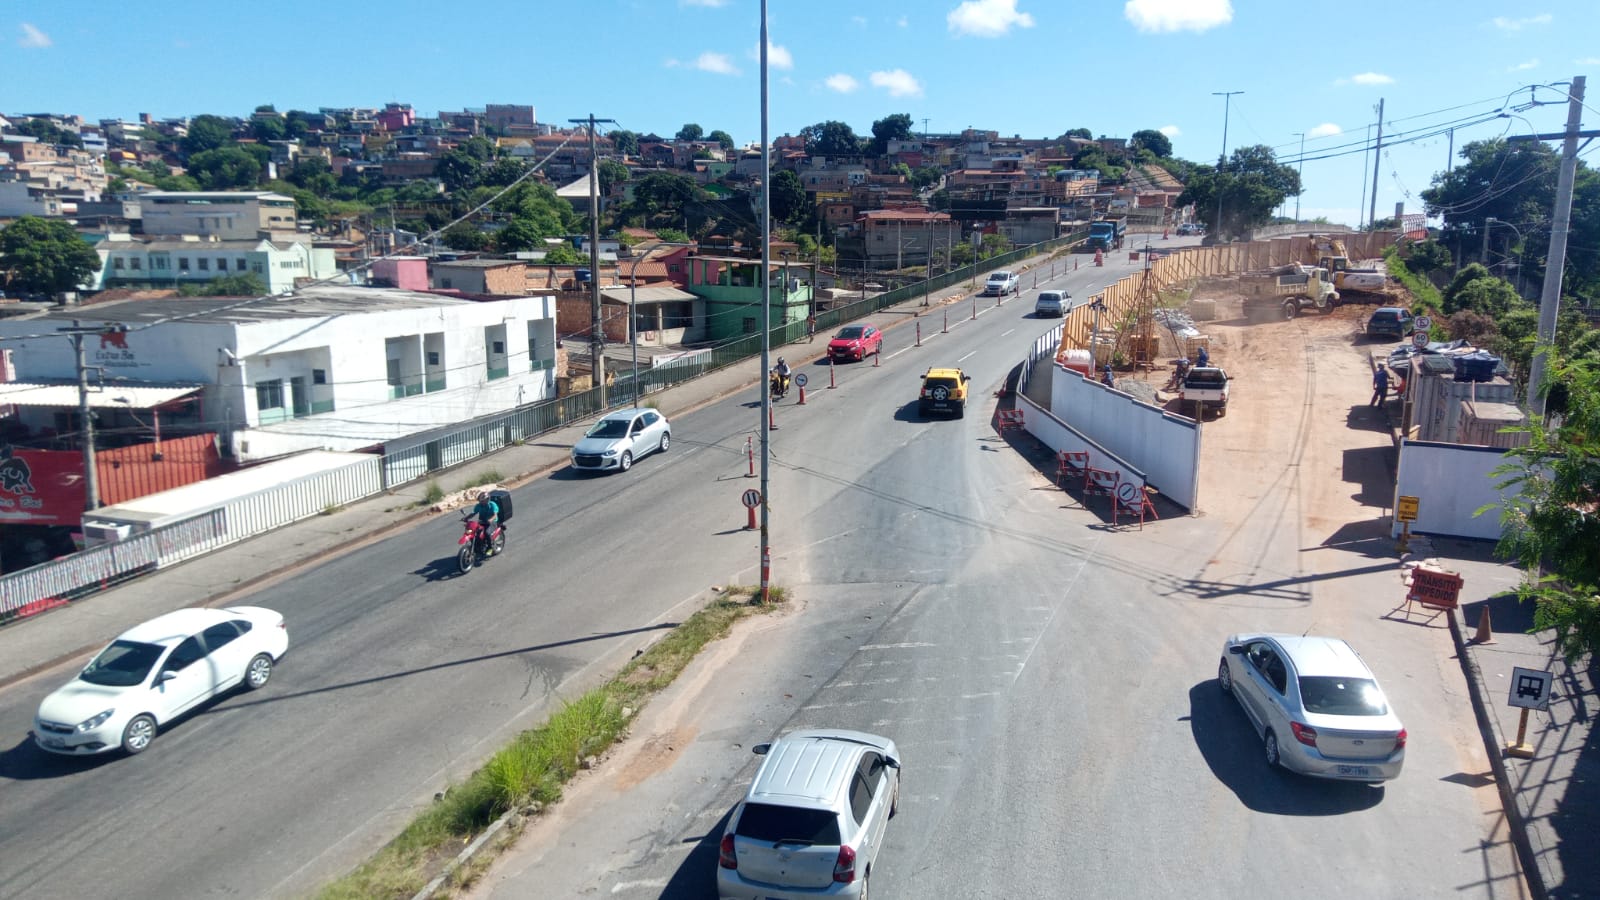 Obras na Via 240 complicam trânsito e causam transtornos próximo à Estação São Gabriel - Foto: Elberty Valadares/Por Dentro de Minas